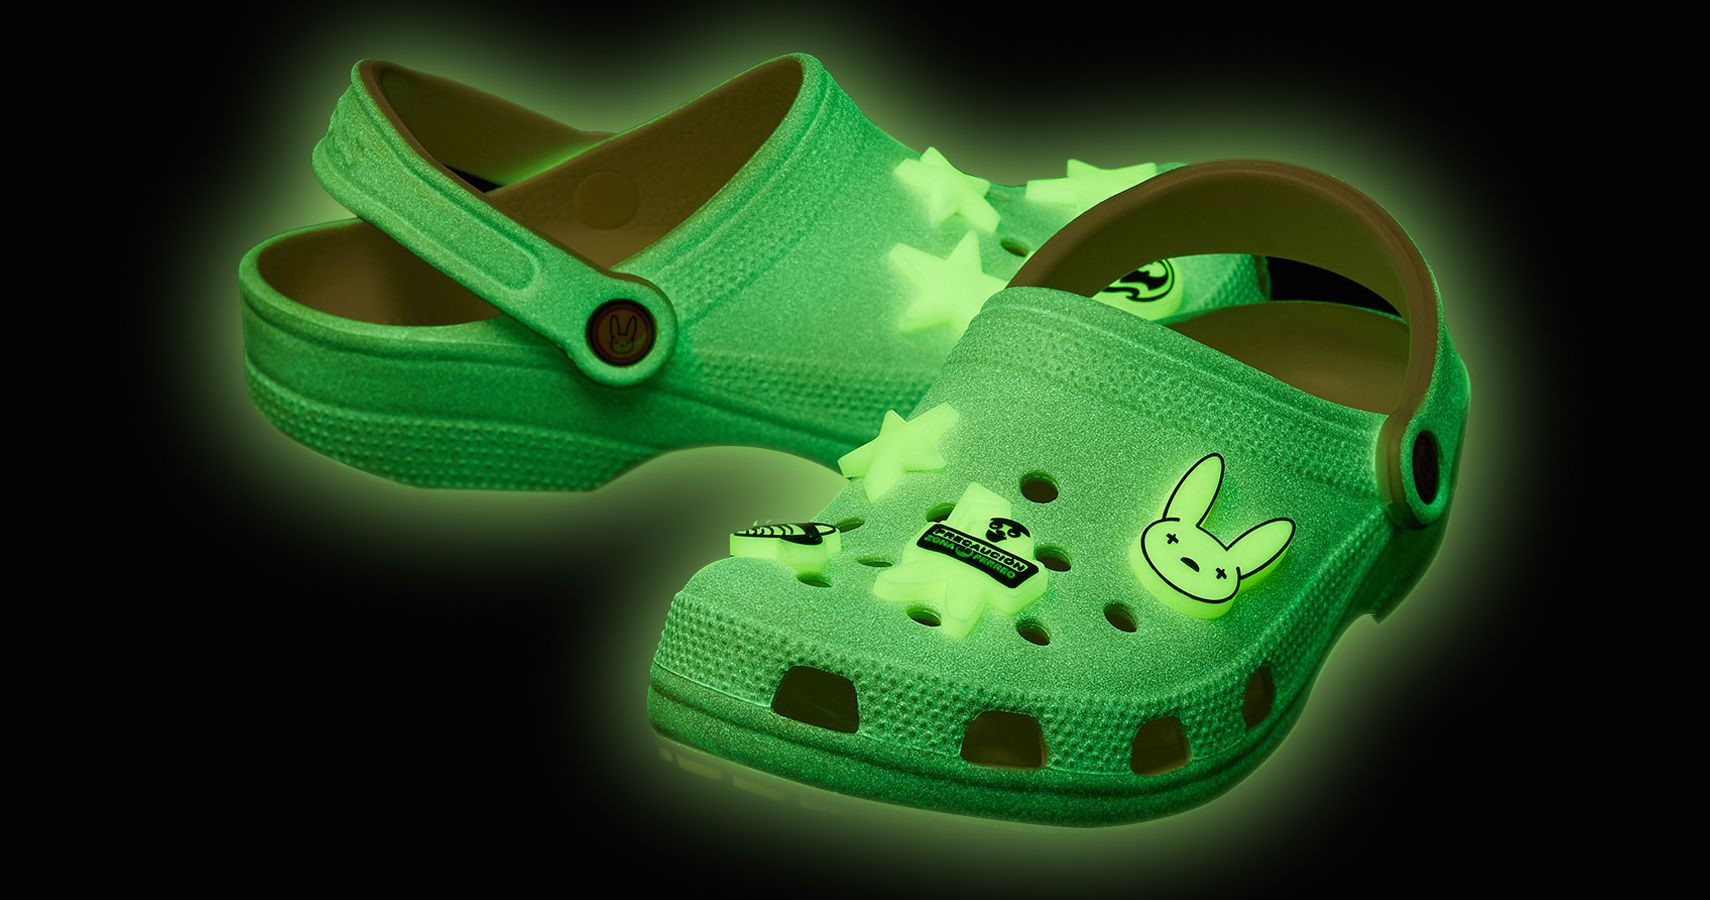 bad bunny crocs for kids